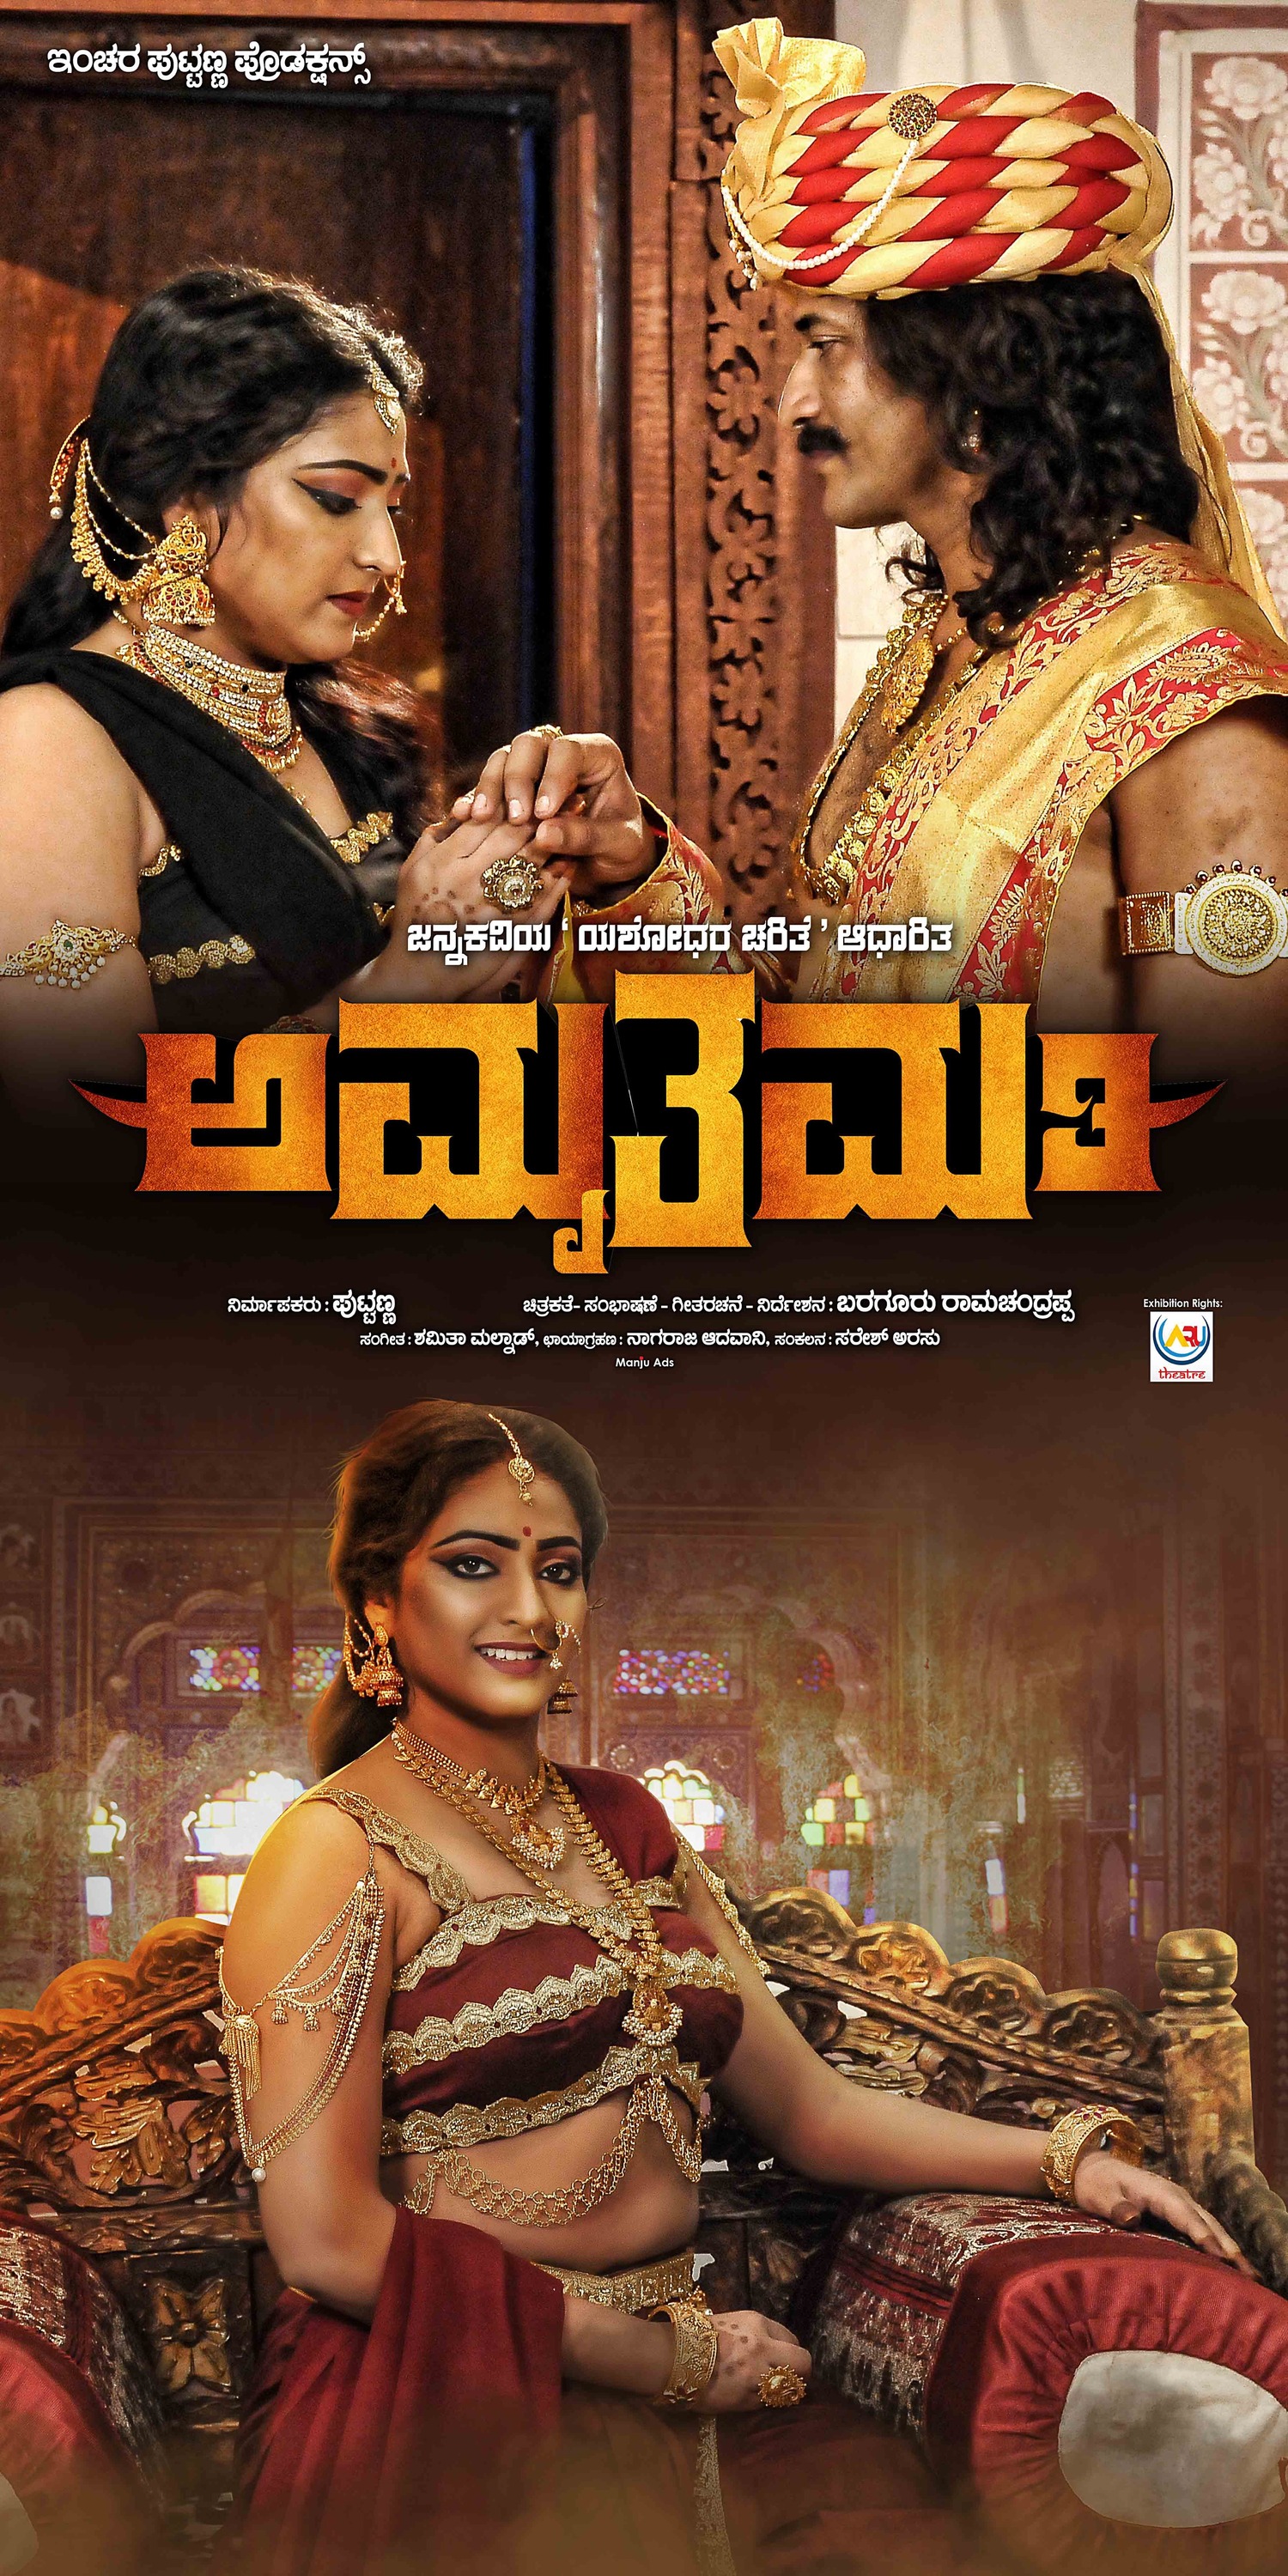 Mega Sized Movie Poster Image for Amruthamathi (#10 of 10)